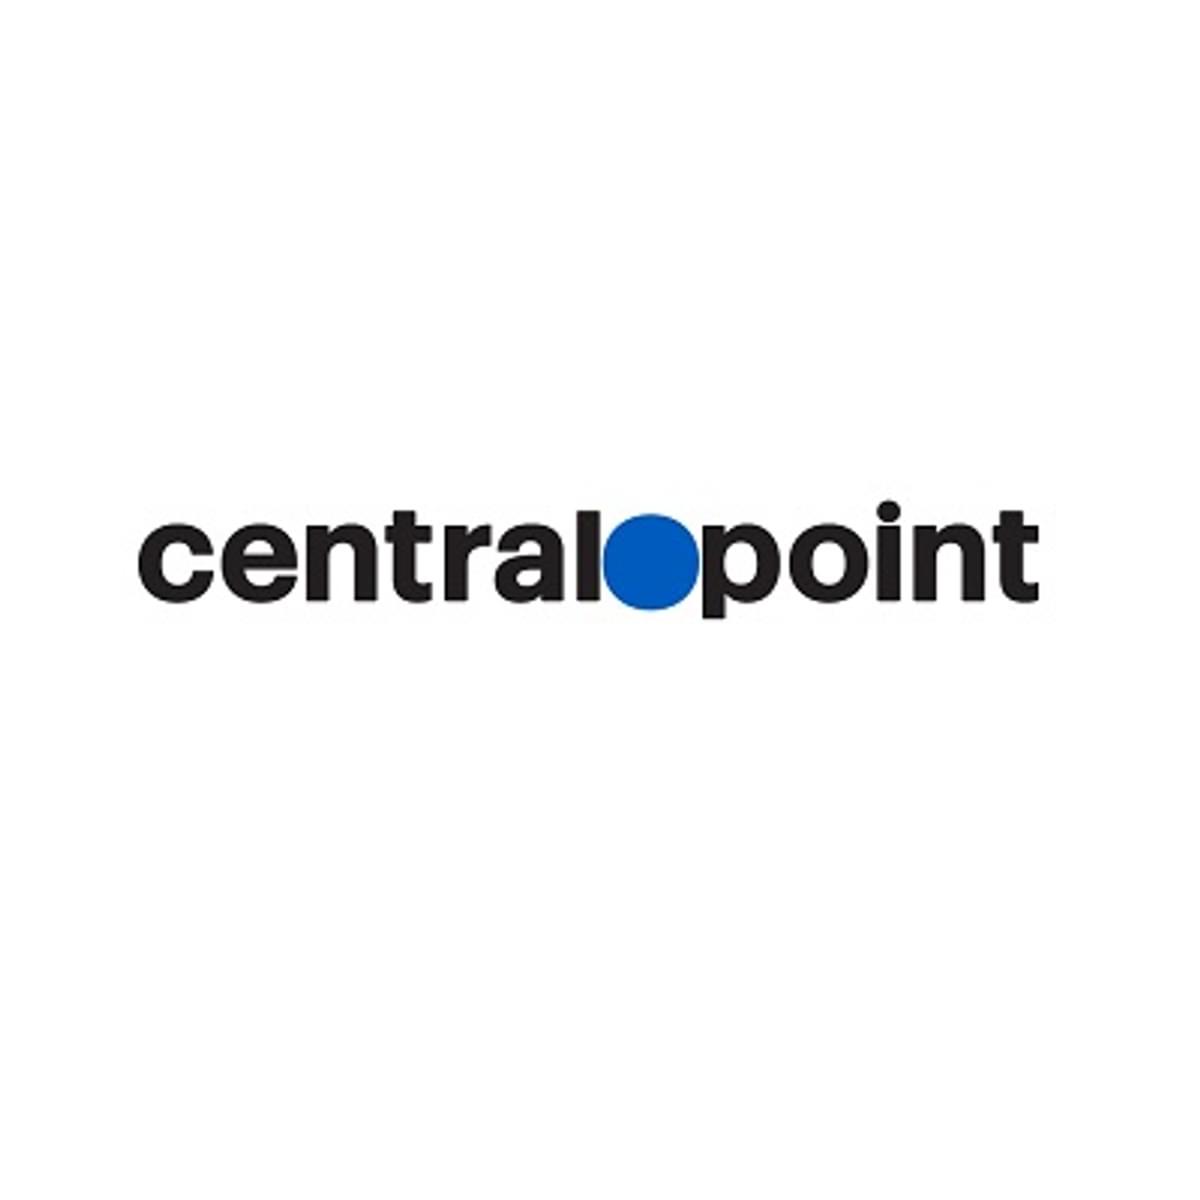 Centralpoint gaat samenwerking met SentinelOne aan voor bescherming endpoints image